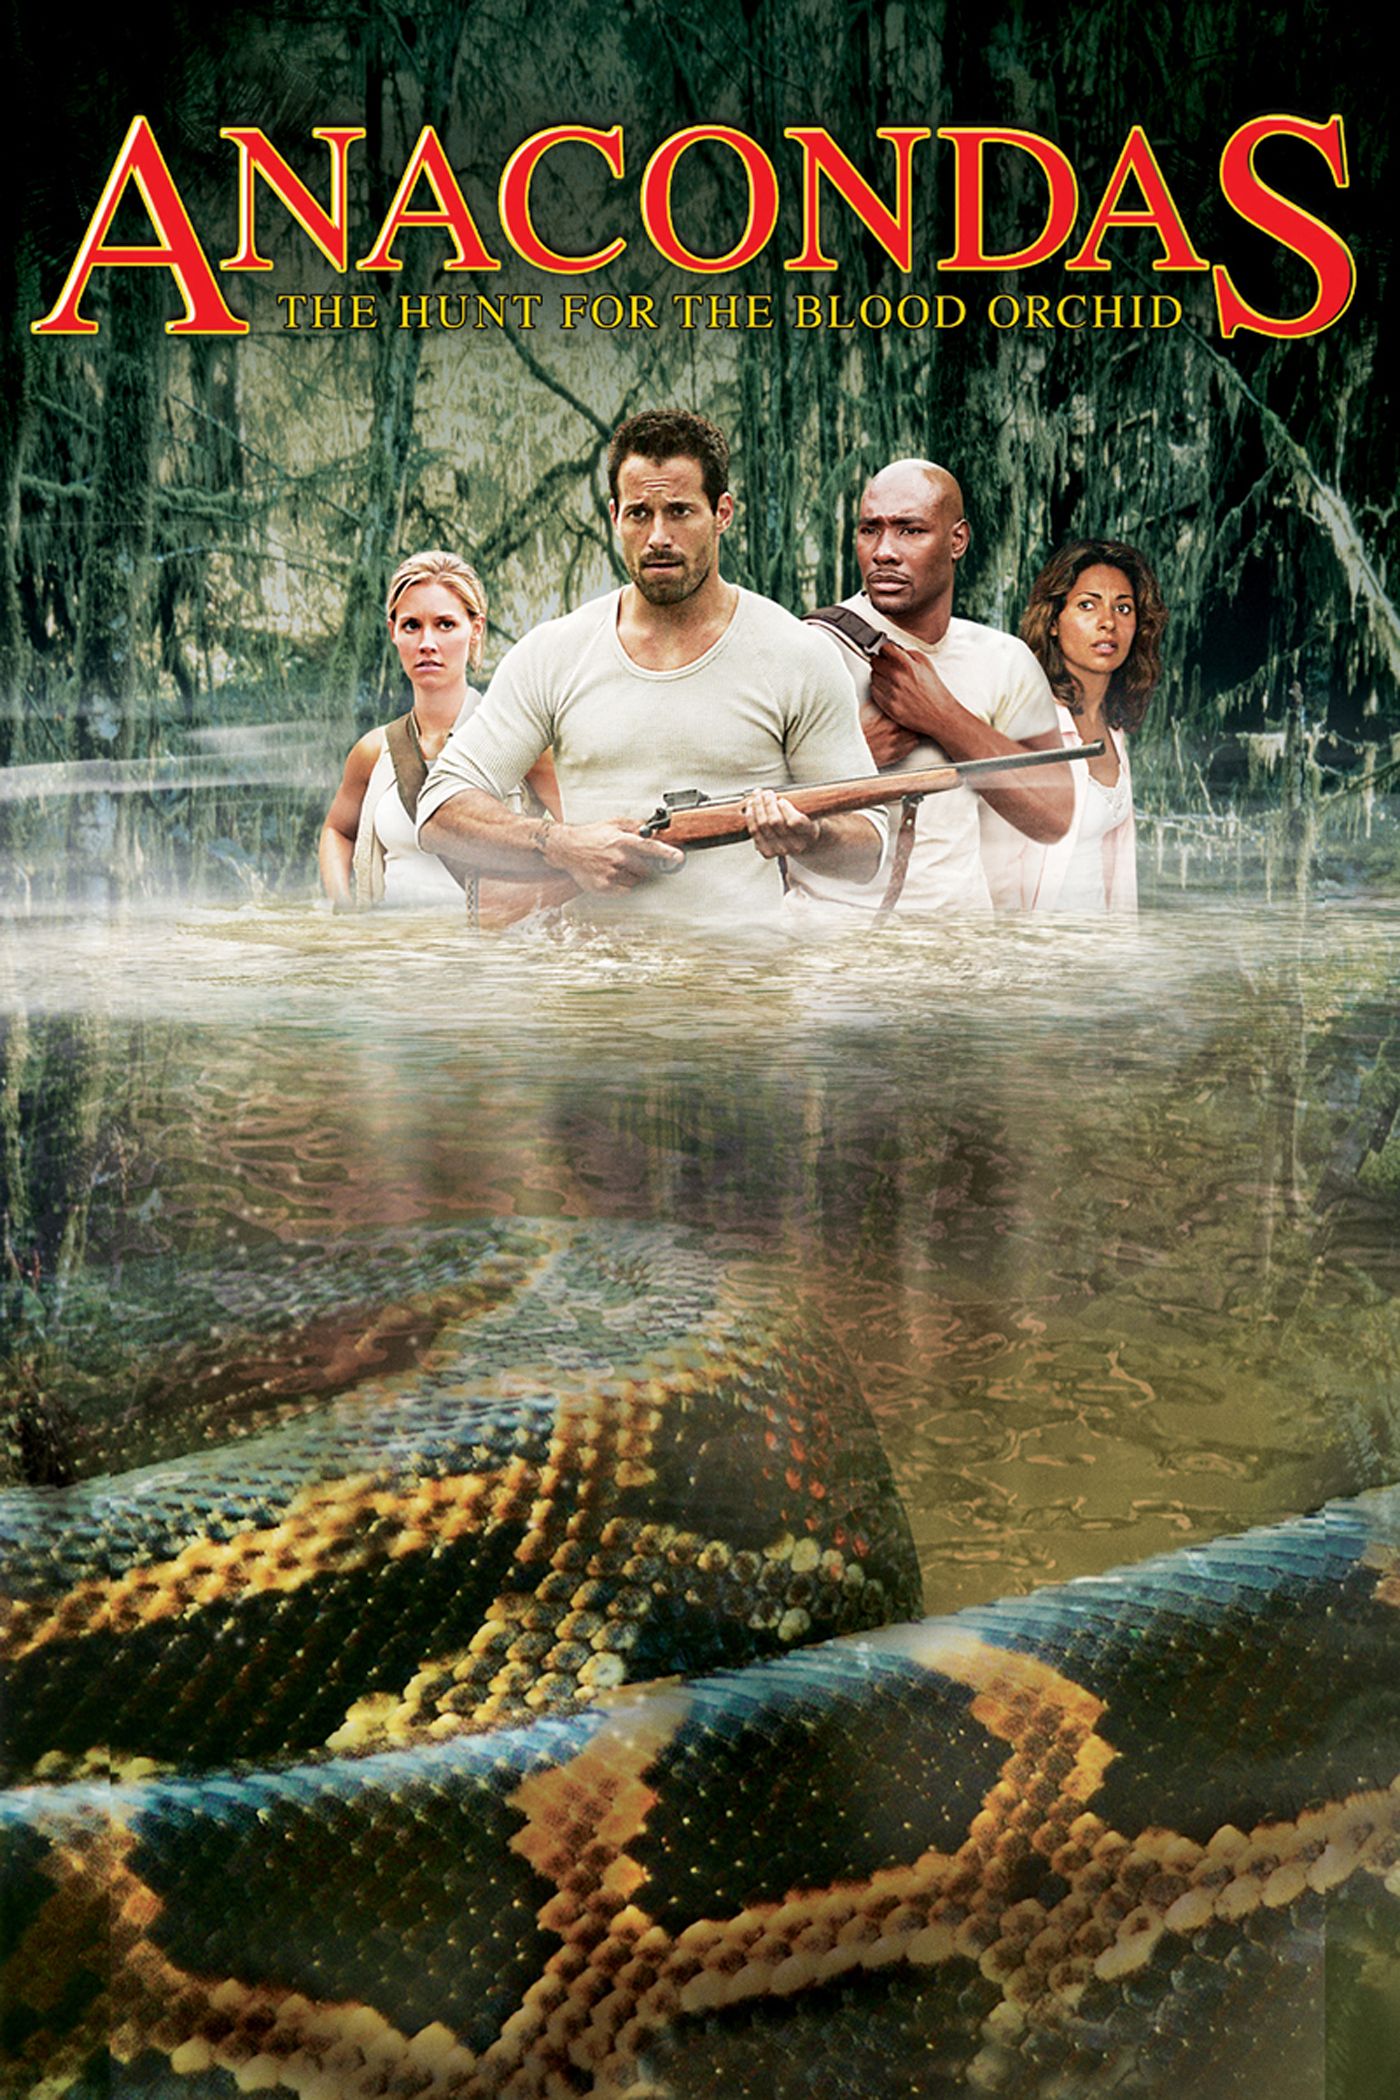 Anaconda movie